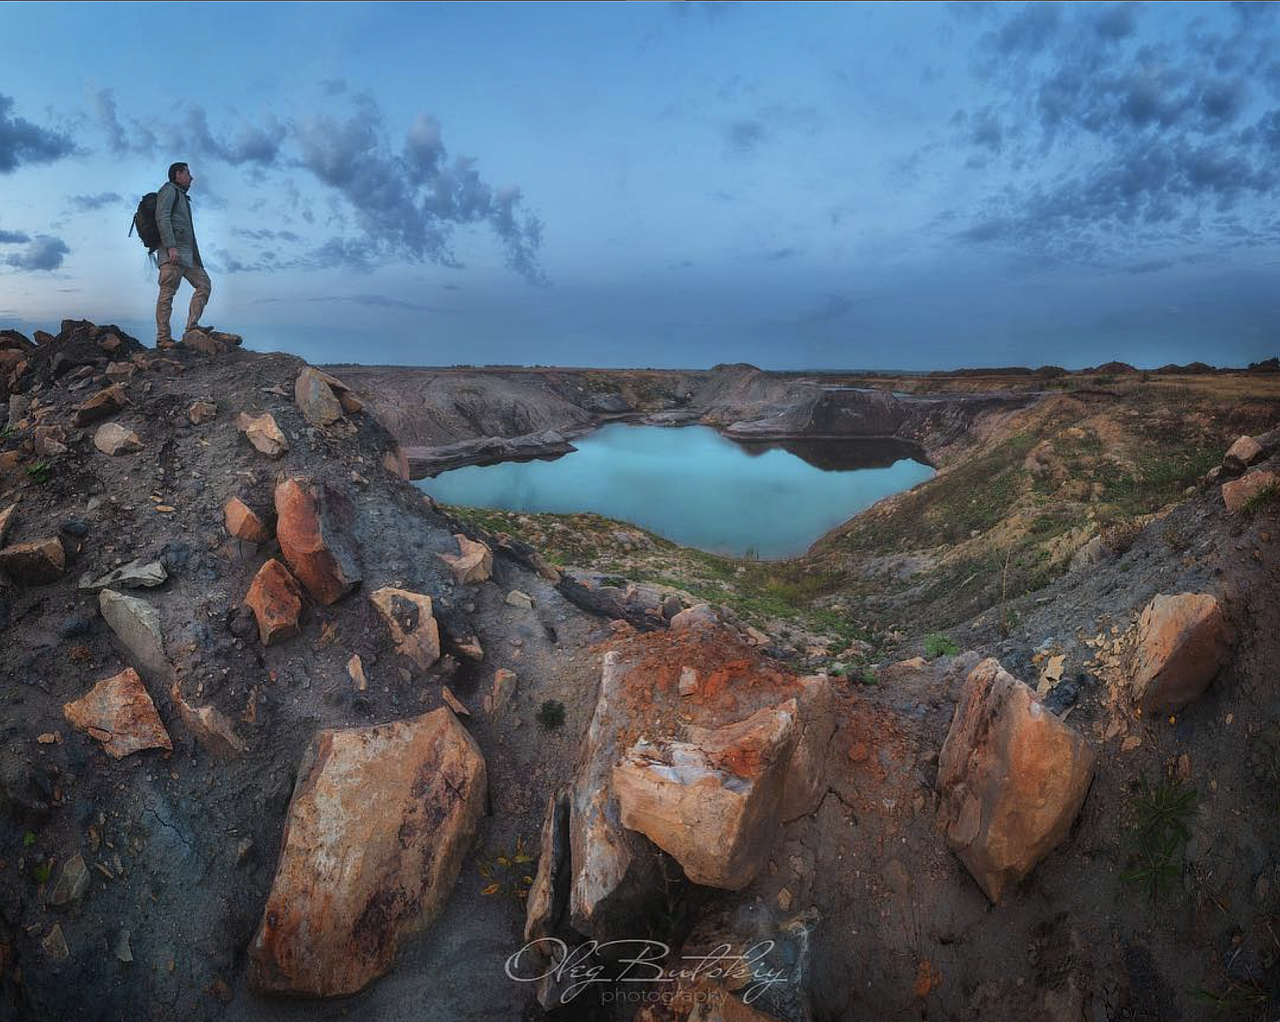 Instagram дня: осень глазами рязанского фотографа Олега Буцкого